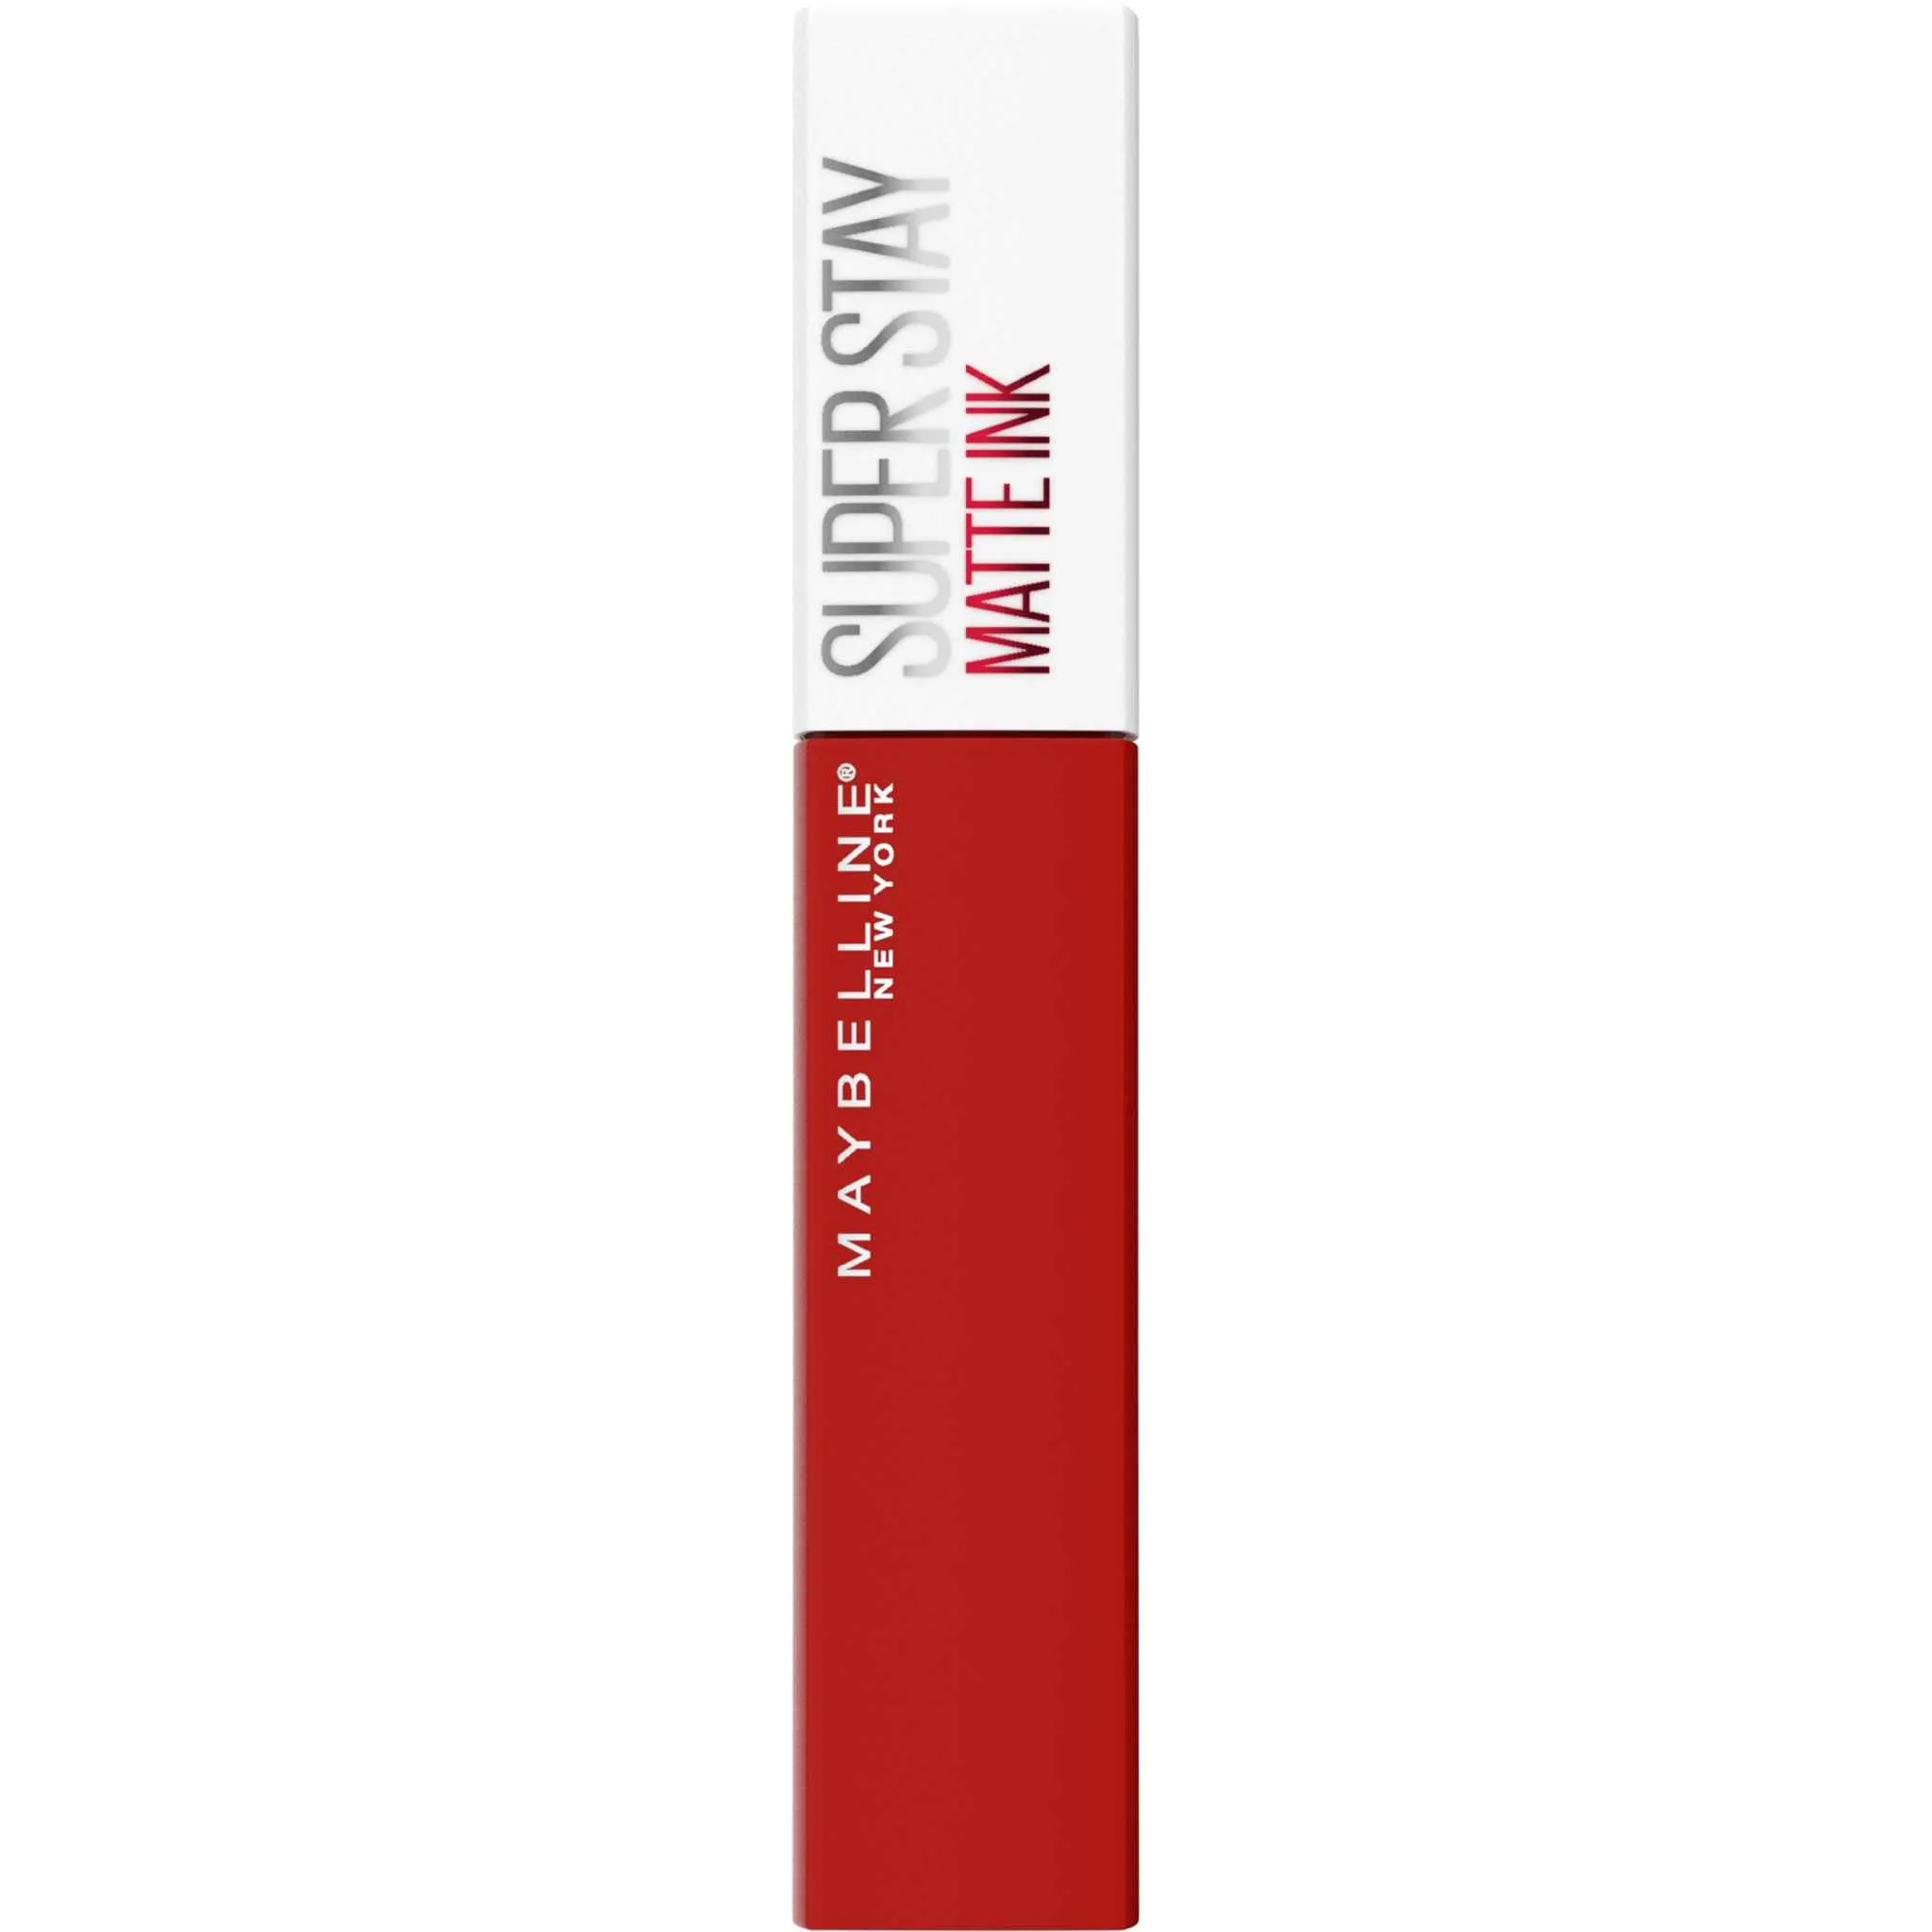 Maybelline New York Super Stay Matte Ink 330 Innovator rúž, 5 ml 1×5 ml, rúž